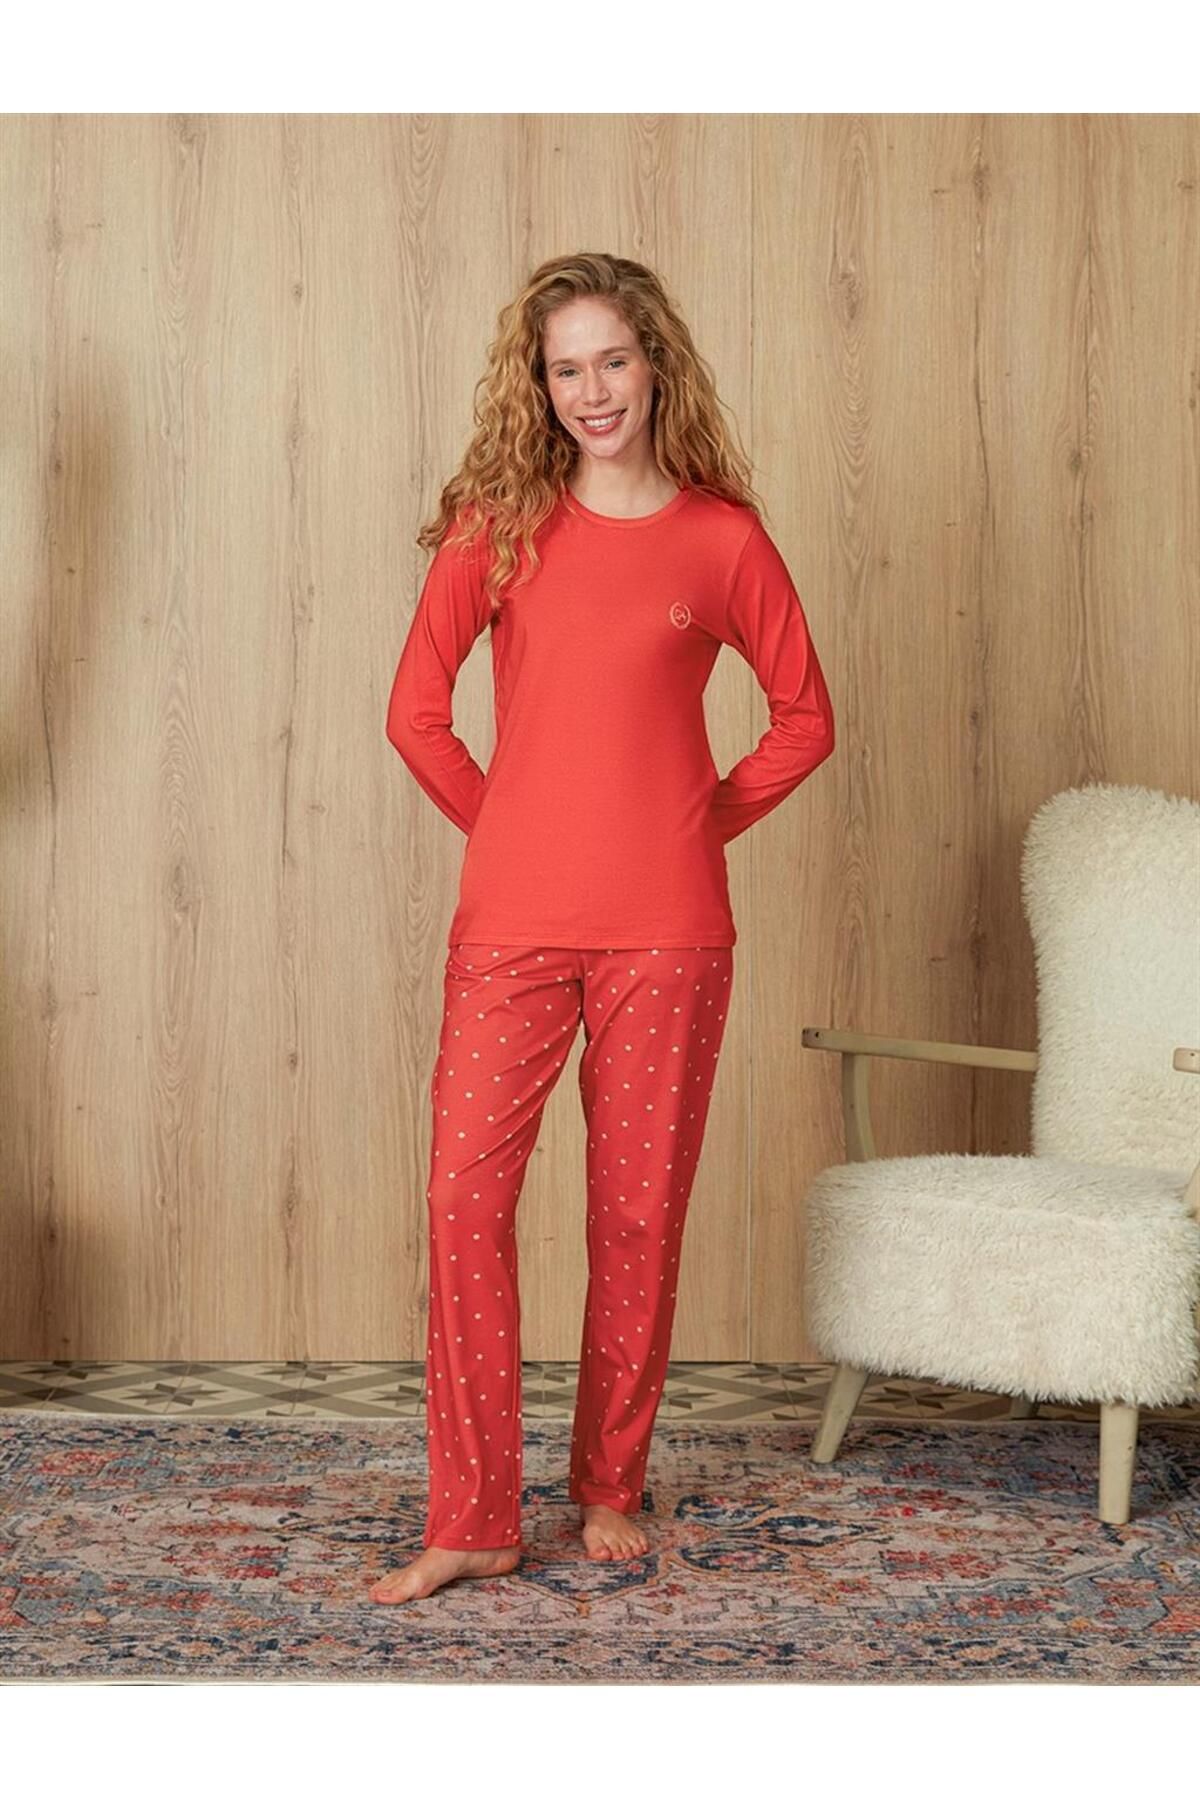 Doreanse Kadın Narçiçeği Puantiye Desenli T-shirt Pijama Takımı 4144